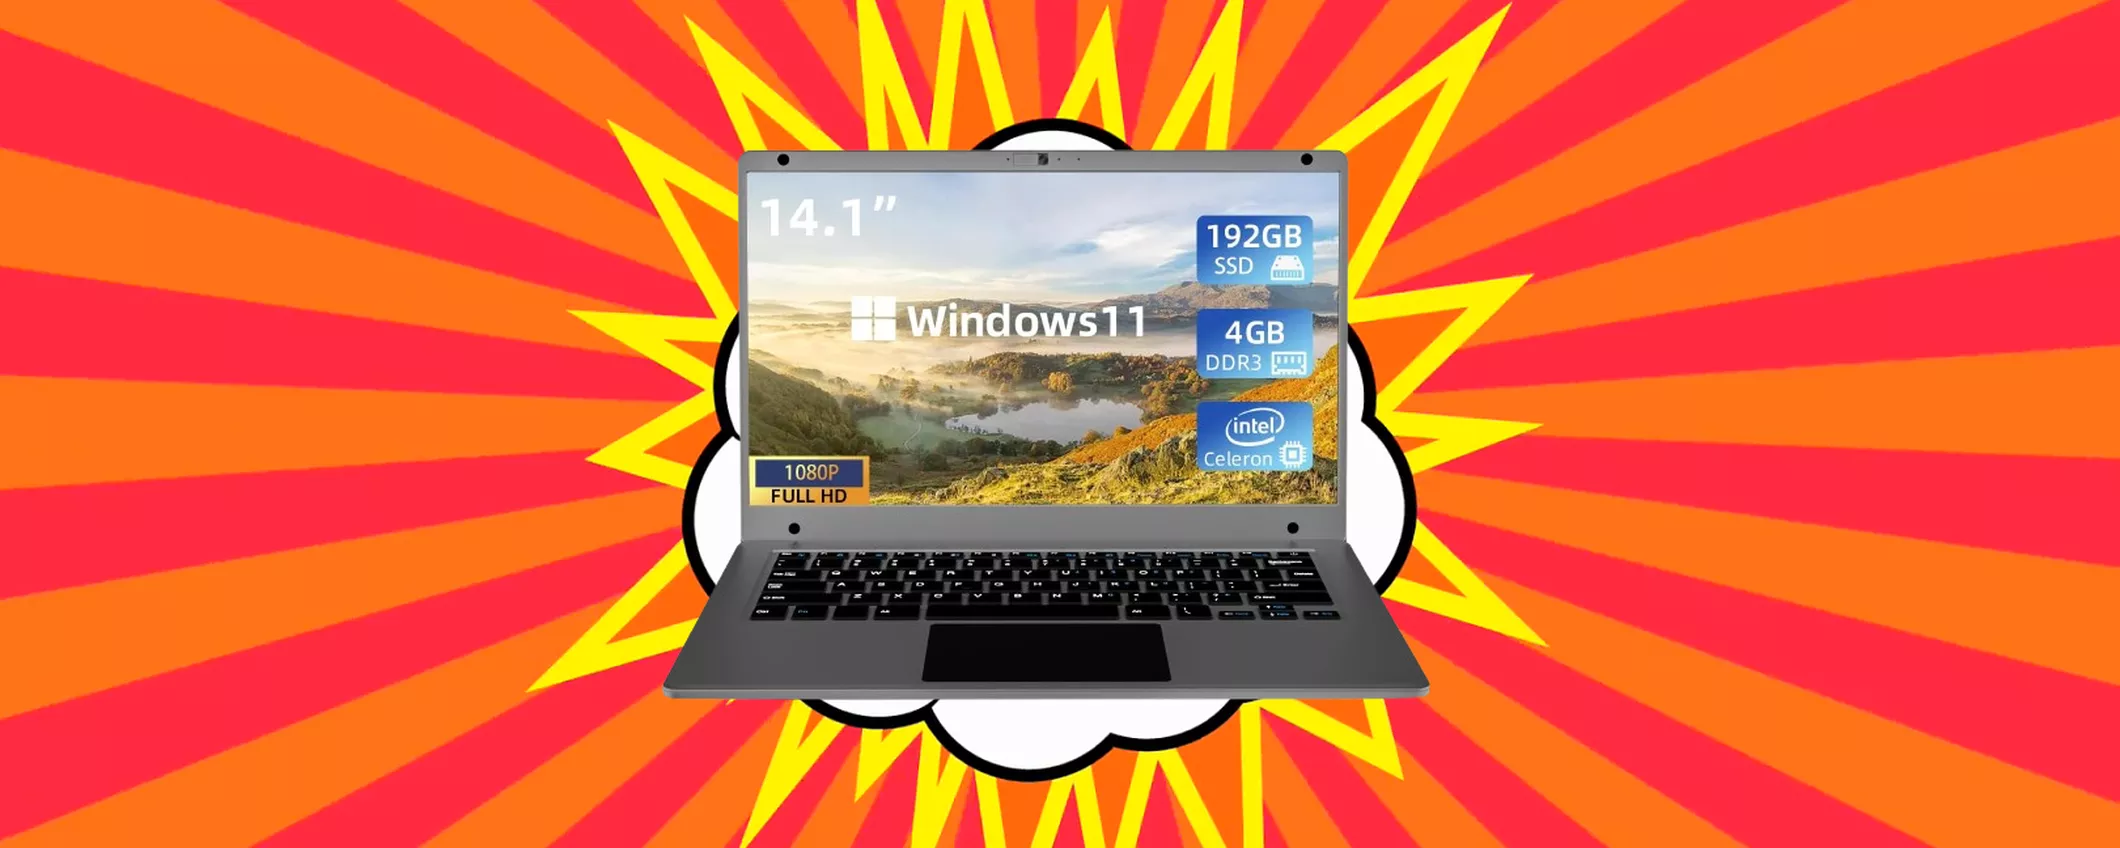 PC portatile con Windows 11 a MINI PREZZO: applica SUBITO il coupon di sconto